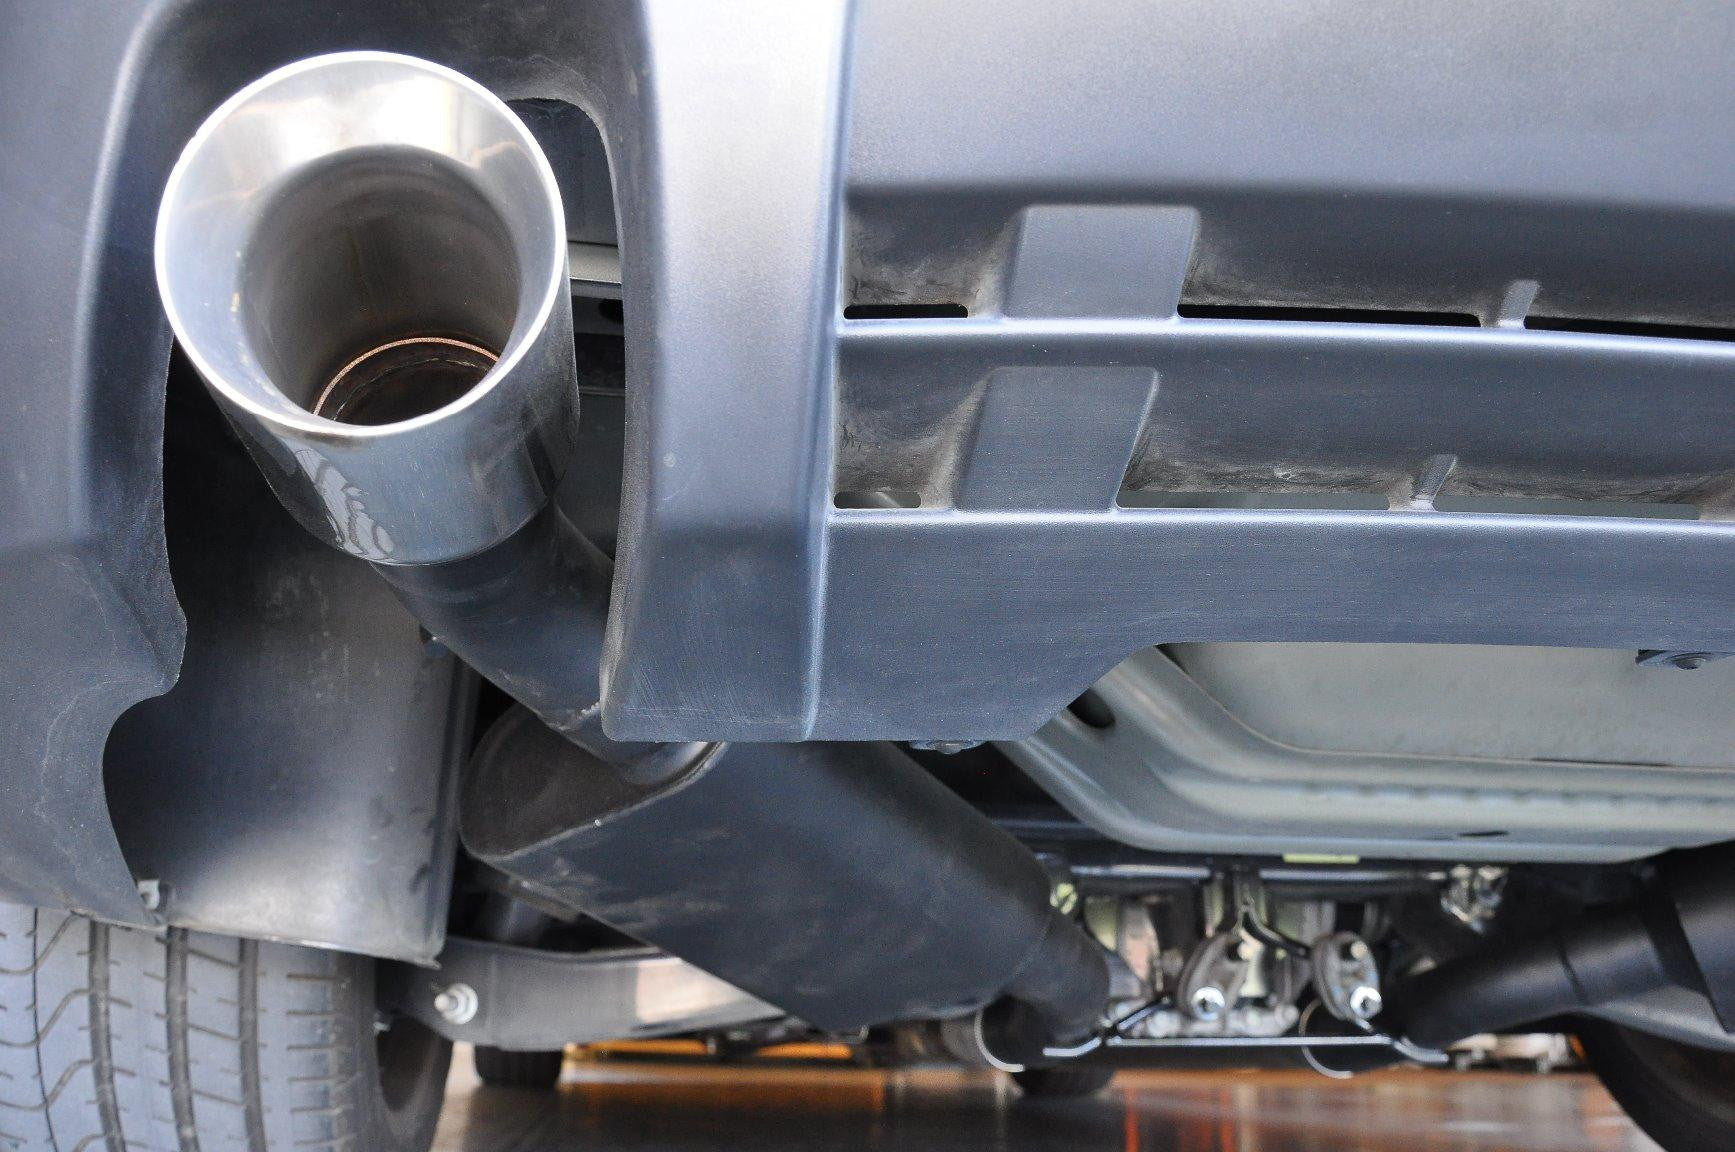 2014-'15 Chevrolet Camaro SS Axle Back Exhaust - Buy Online